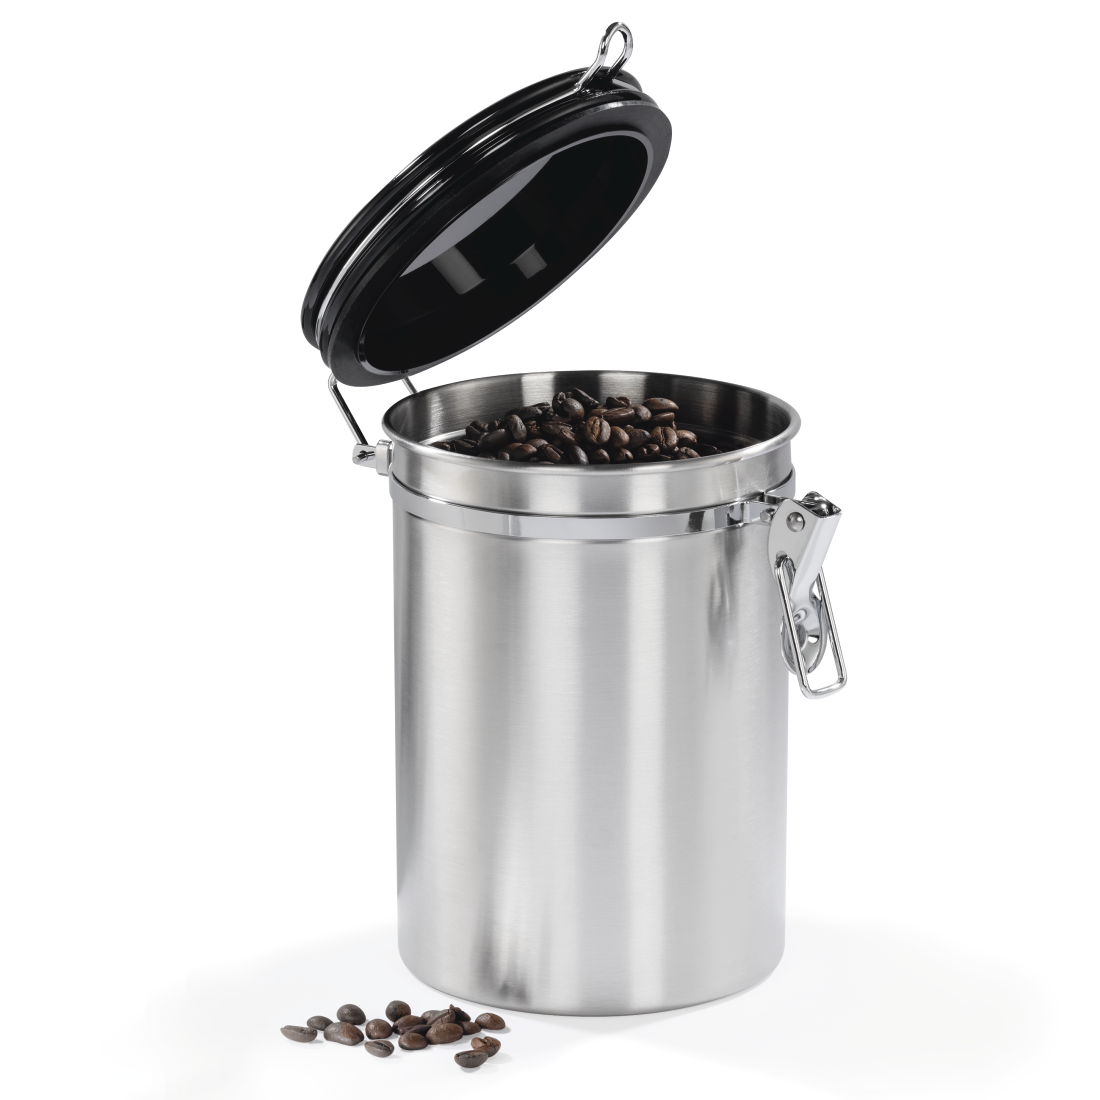 abx4 High-Res Image4 - Xavax, Boîte en acier inoxydable pour 1000 g de café moulu, argentée